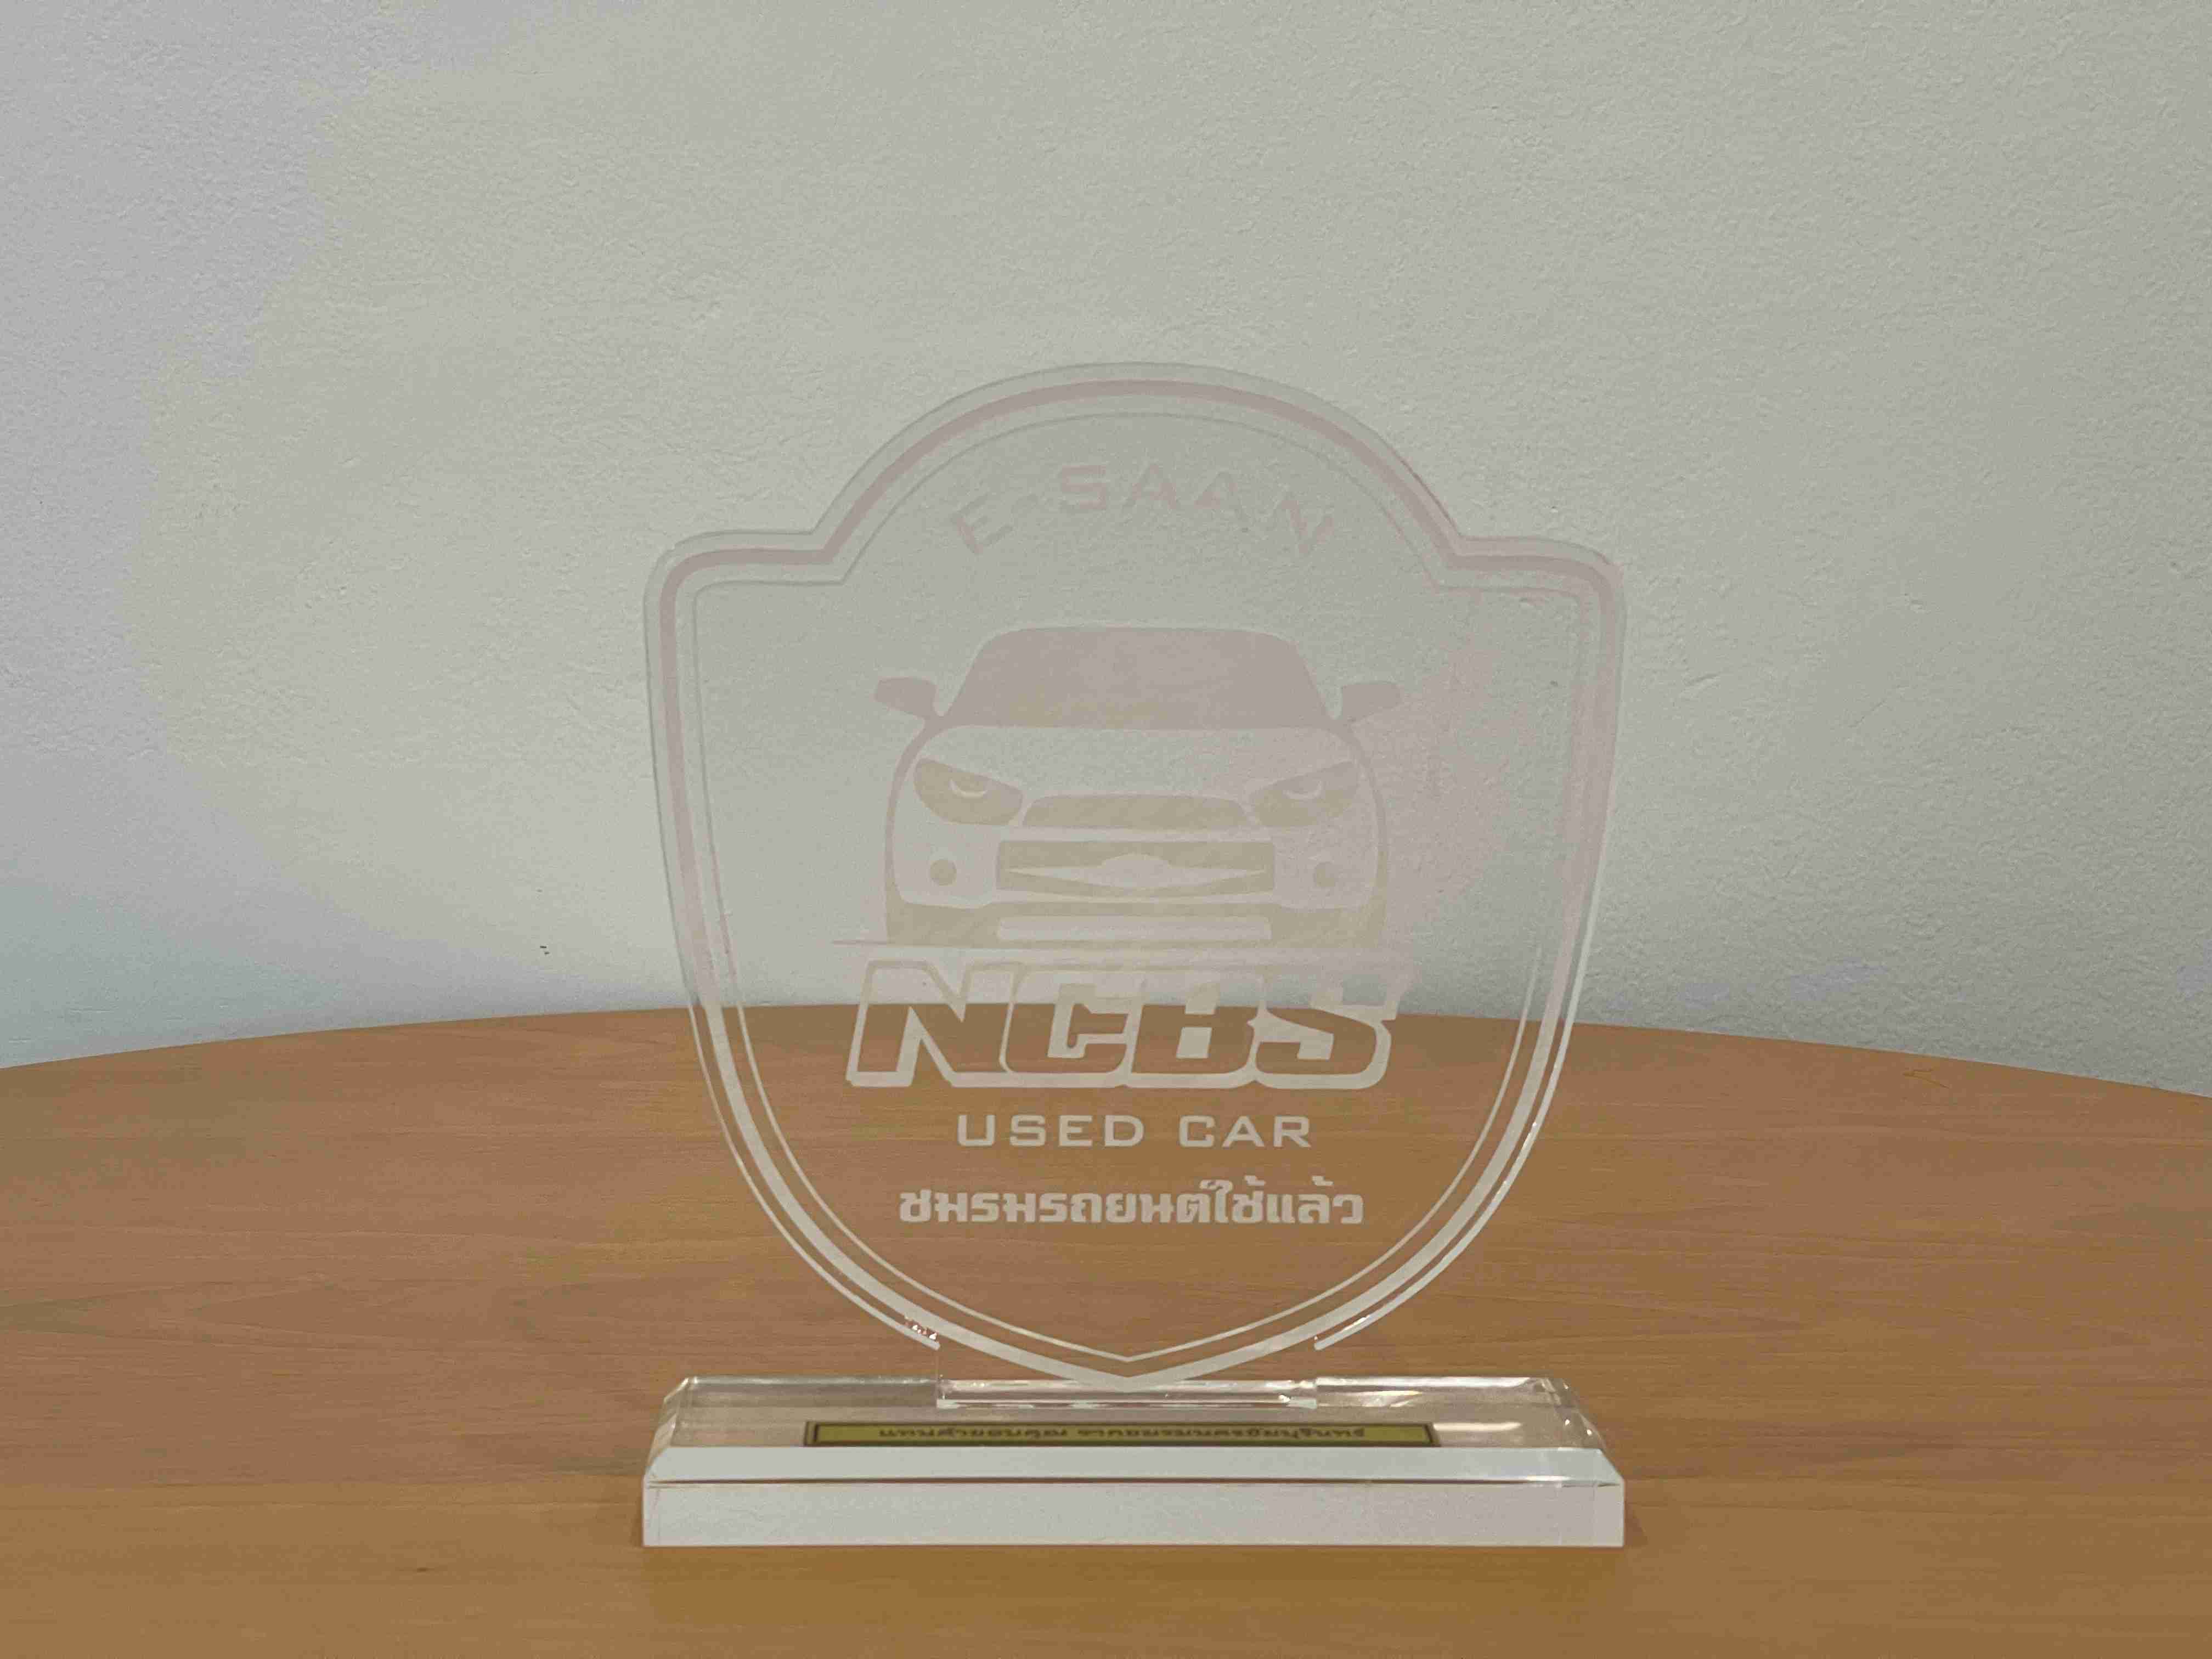 award-3